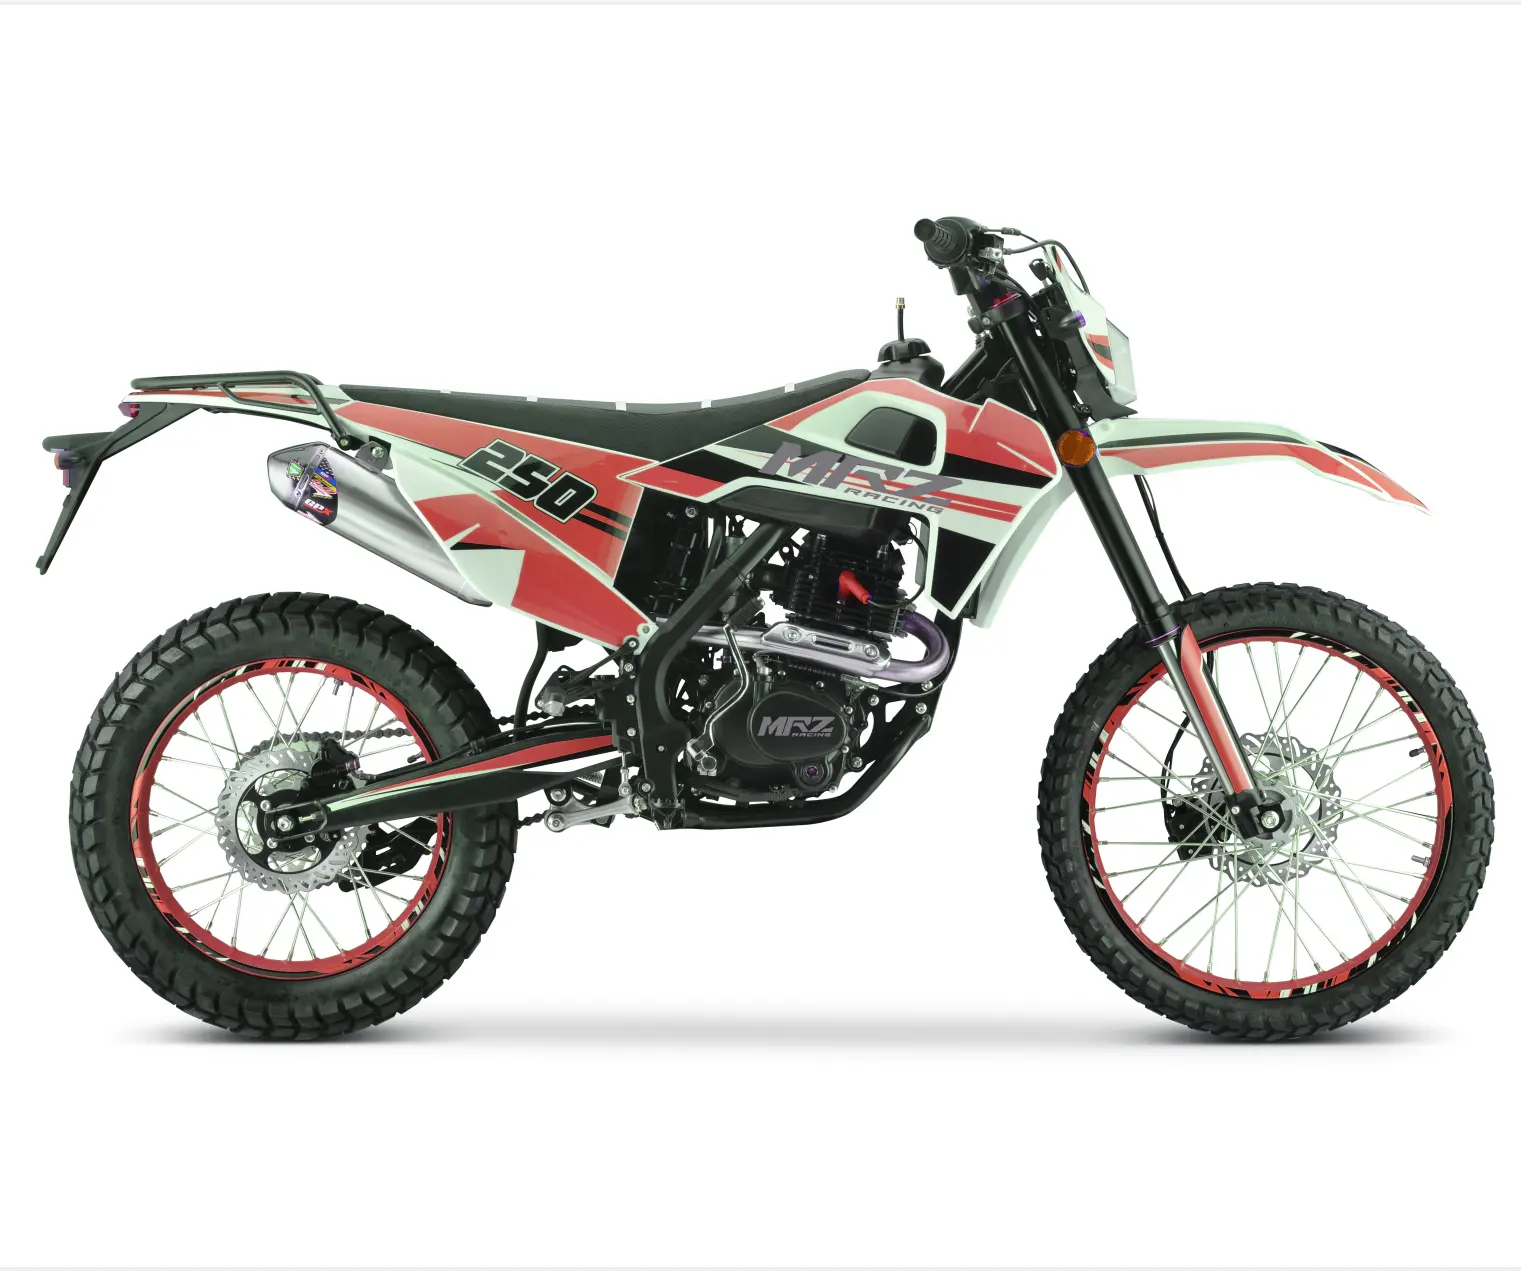 DA250 kir bisiklet sıcak satış 250cc CE ile moto enduro fabrica de çin gaz kapalı yol diğer motosiklet motosiklet kir bisiklet Moto